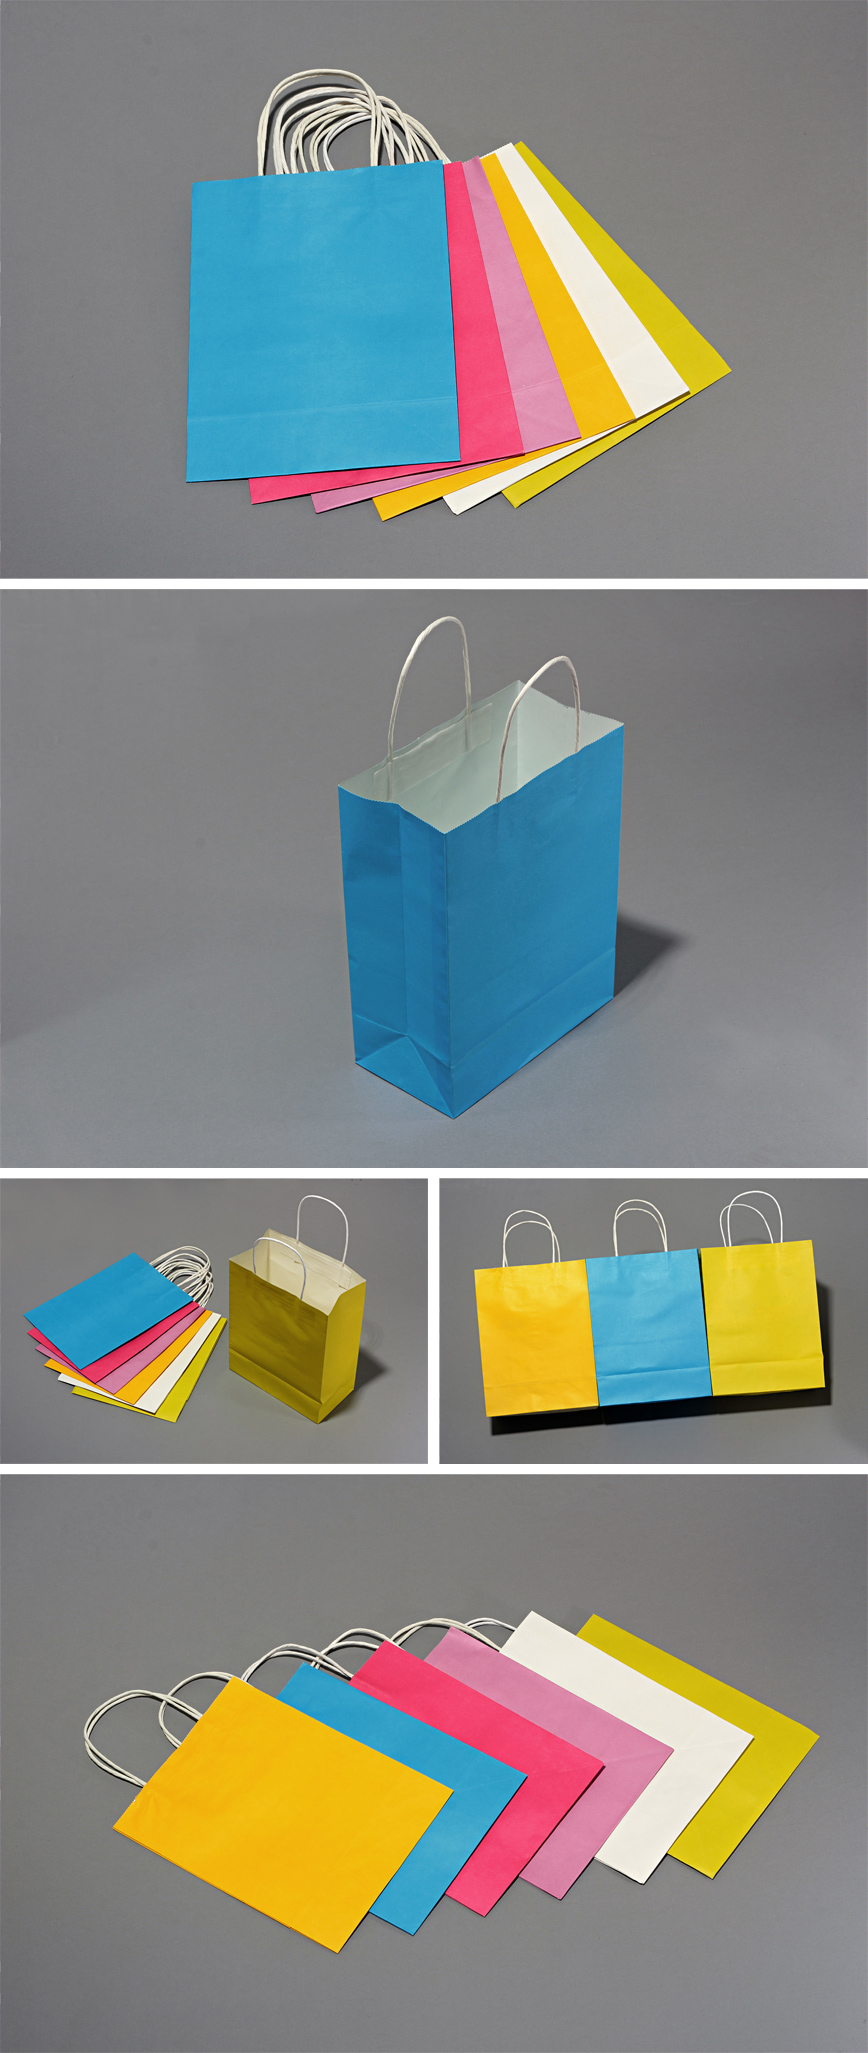 环保纸袋(手提袋)样品展示，环保纸袋(手提袋)局部细节、颜色、款式展示。